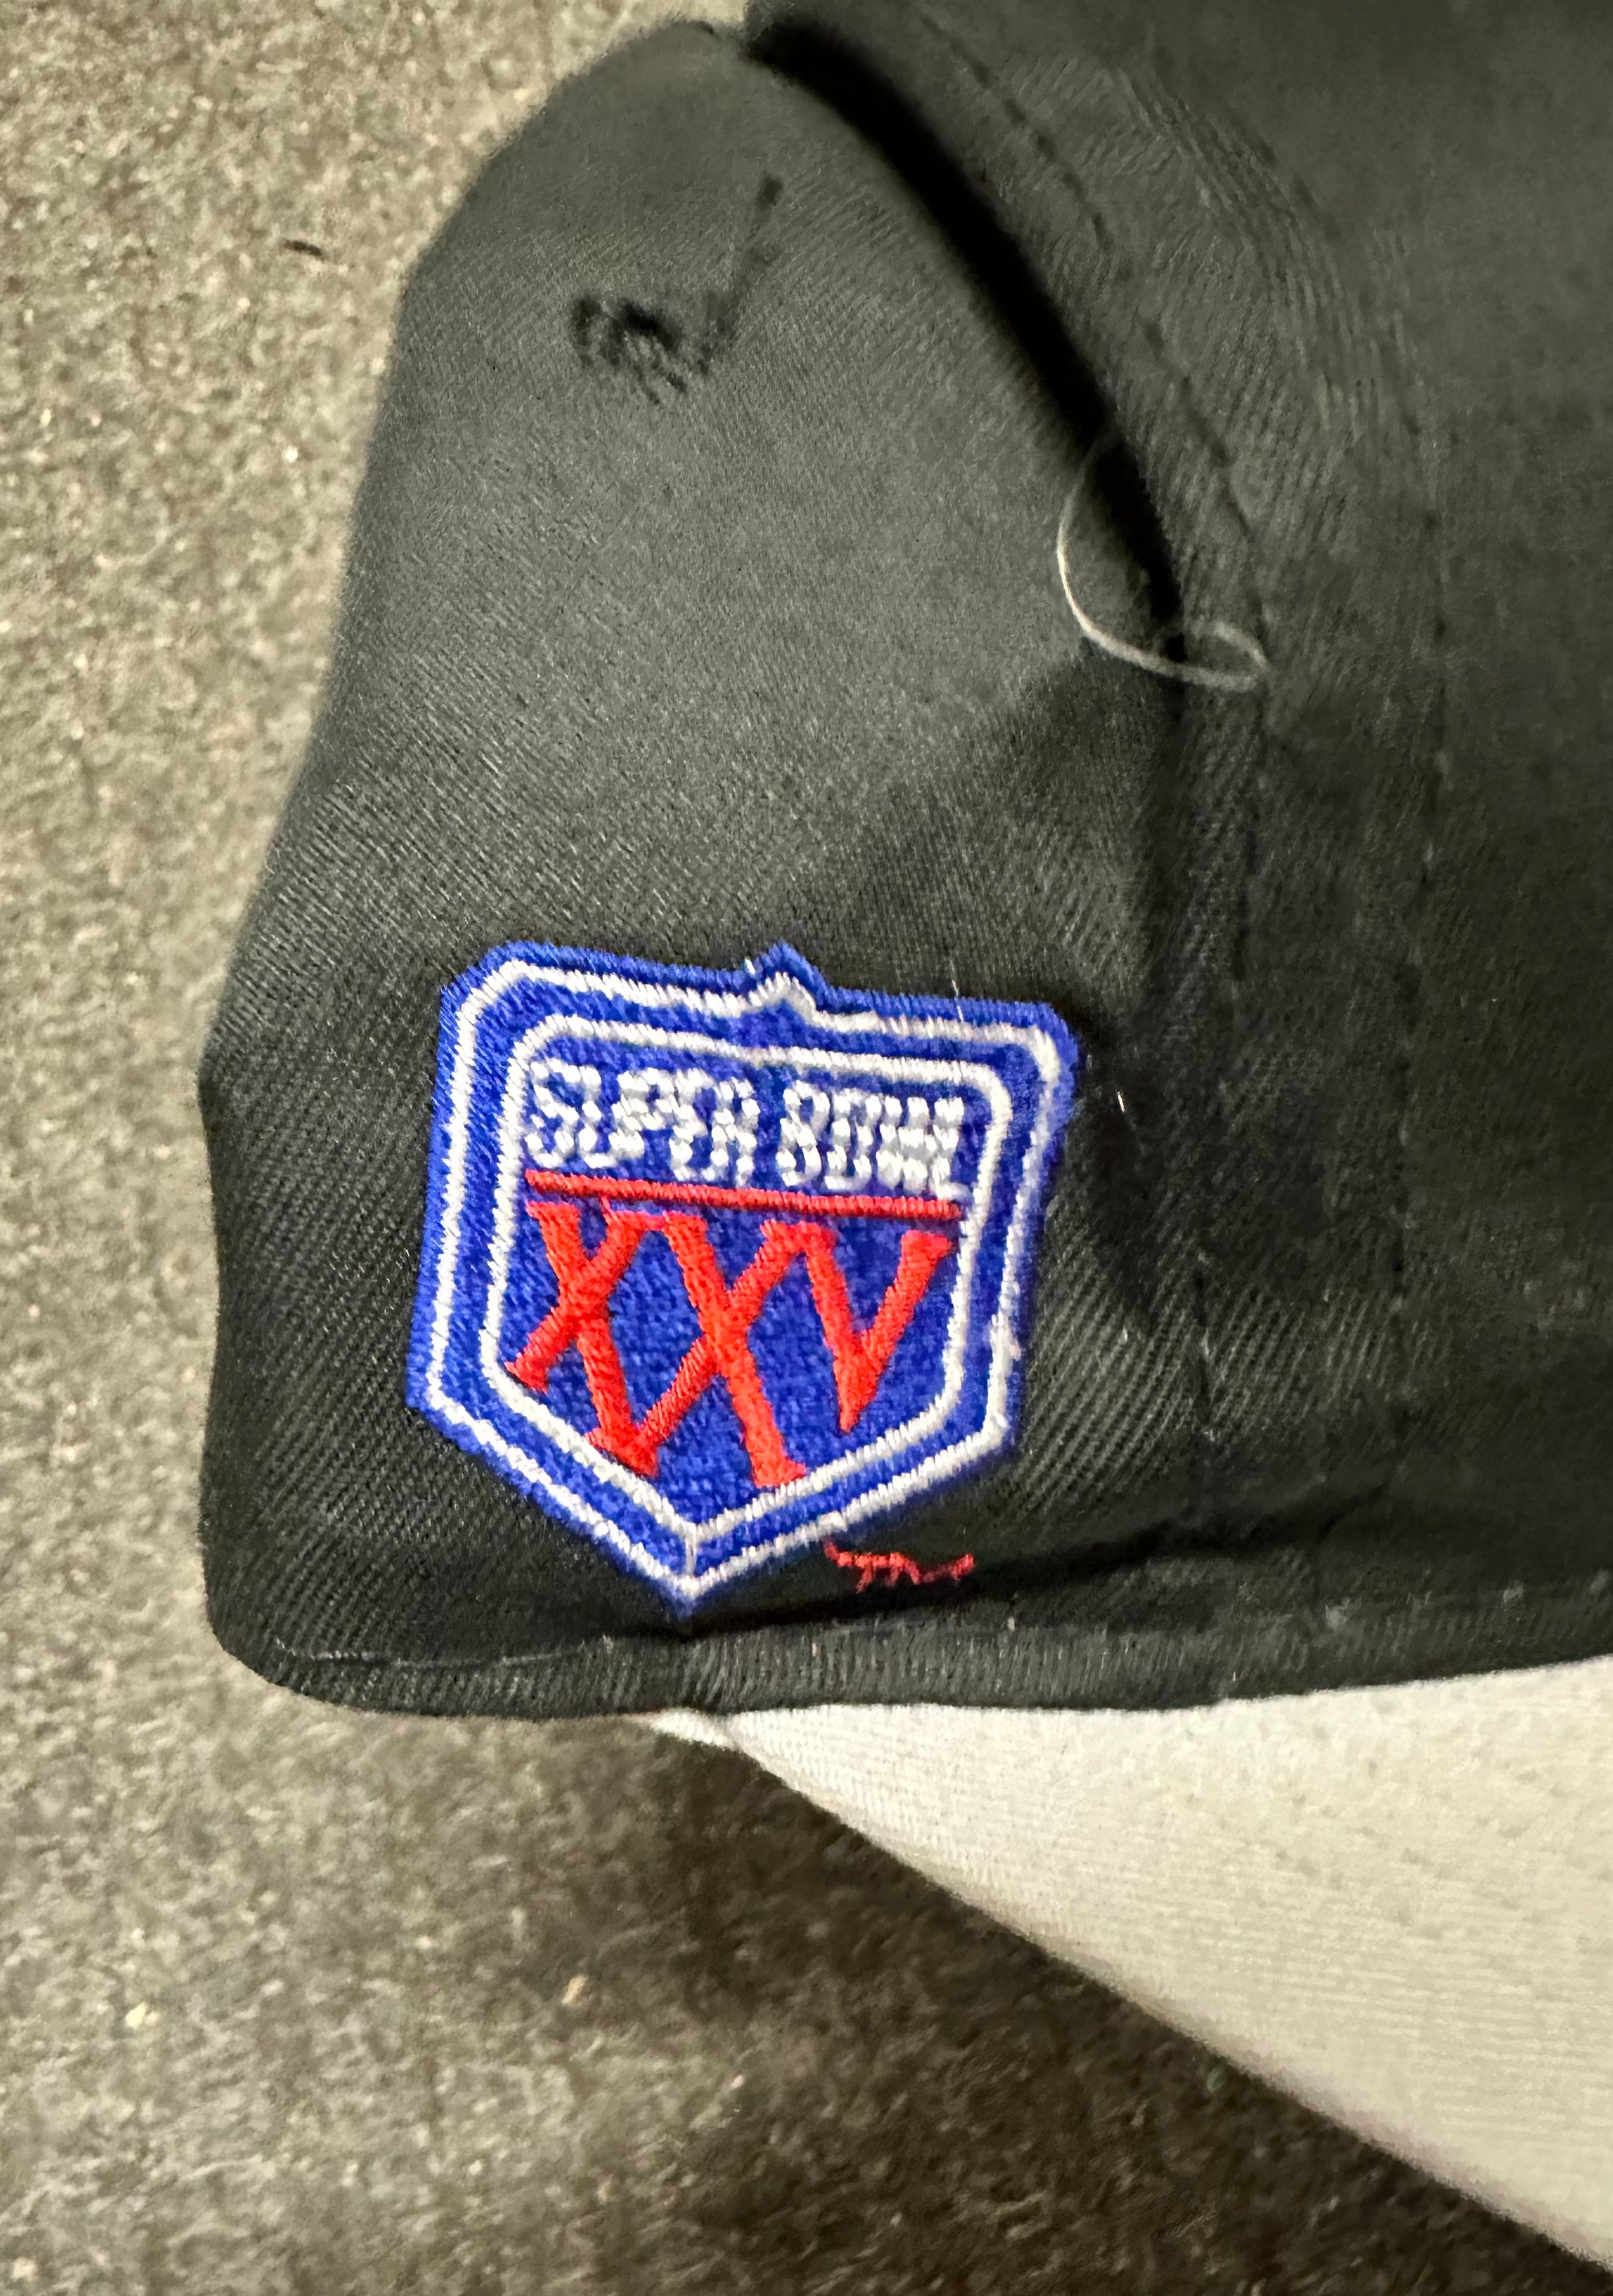 Super Bowl Tampa bay rare original snap back hat 1991